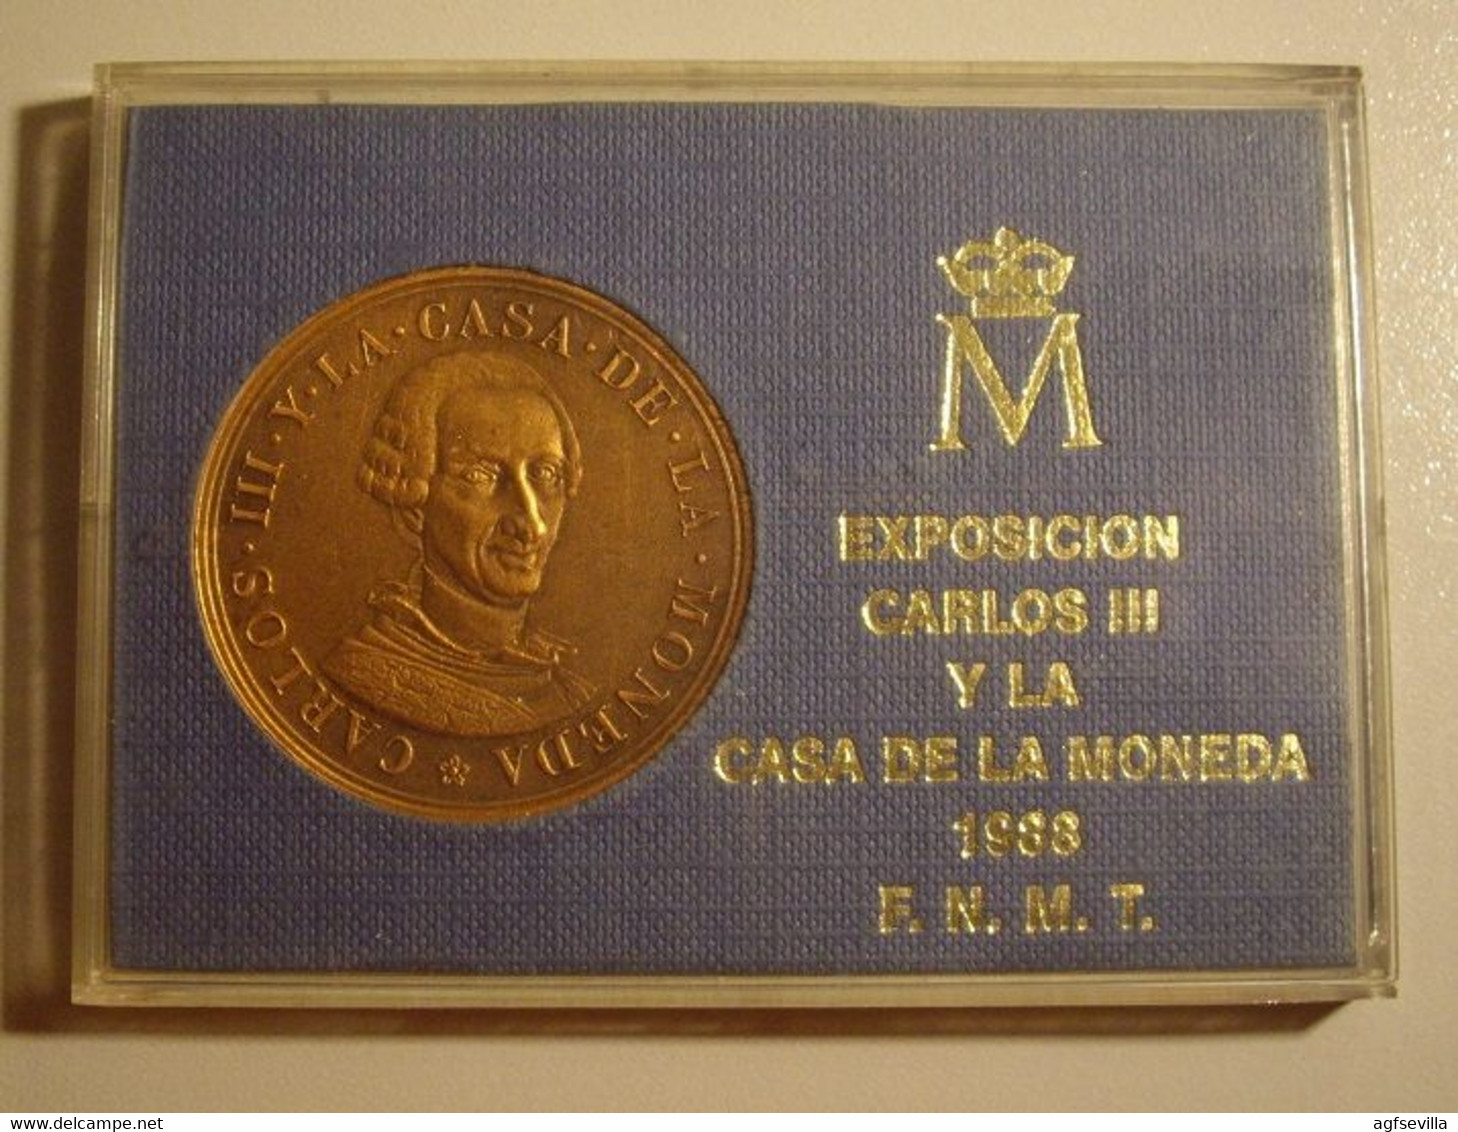 ESPAÑA. MEDALLA F.N.M.T. EXPOSICIÓN CARLOS III Y LA CASA DE LA MONEDA. 1.988. BRONCE. ESPAGNE. SPAIN MEDAL - Monarquía/ Nobleza